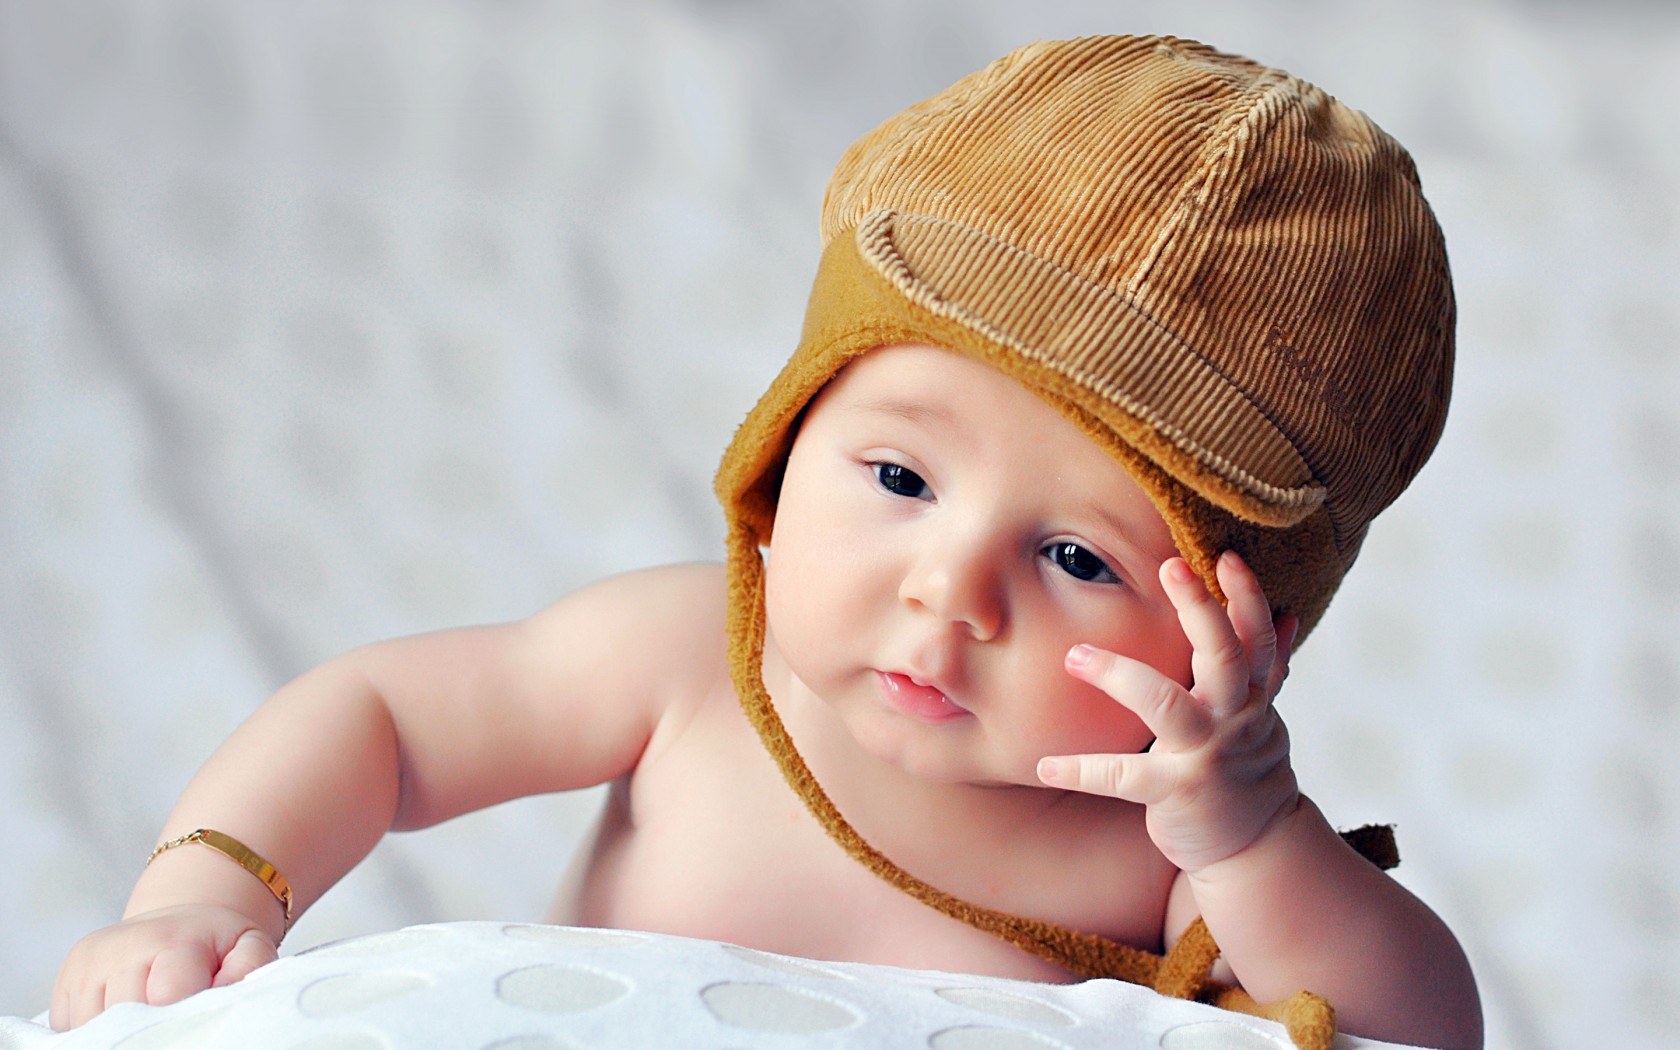 download di sfondi hd per bambini,bambino,bambino,bambino piccolo,copricapo,berretto a maglia